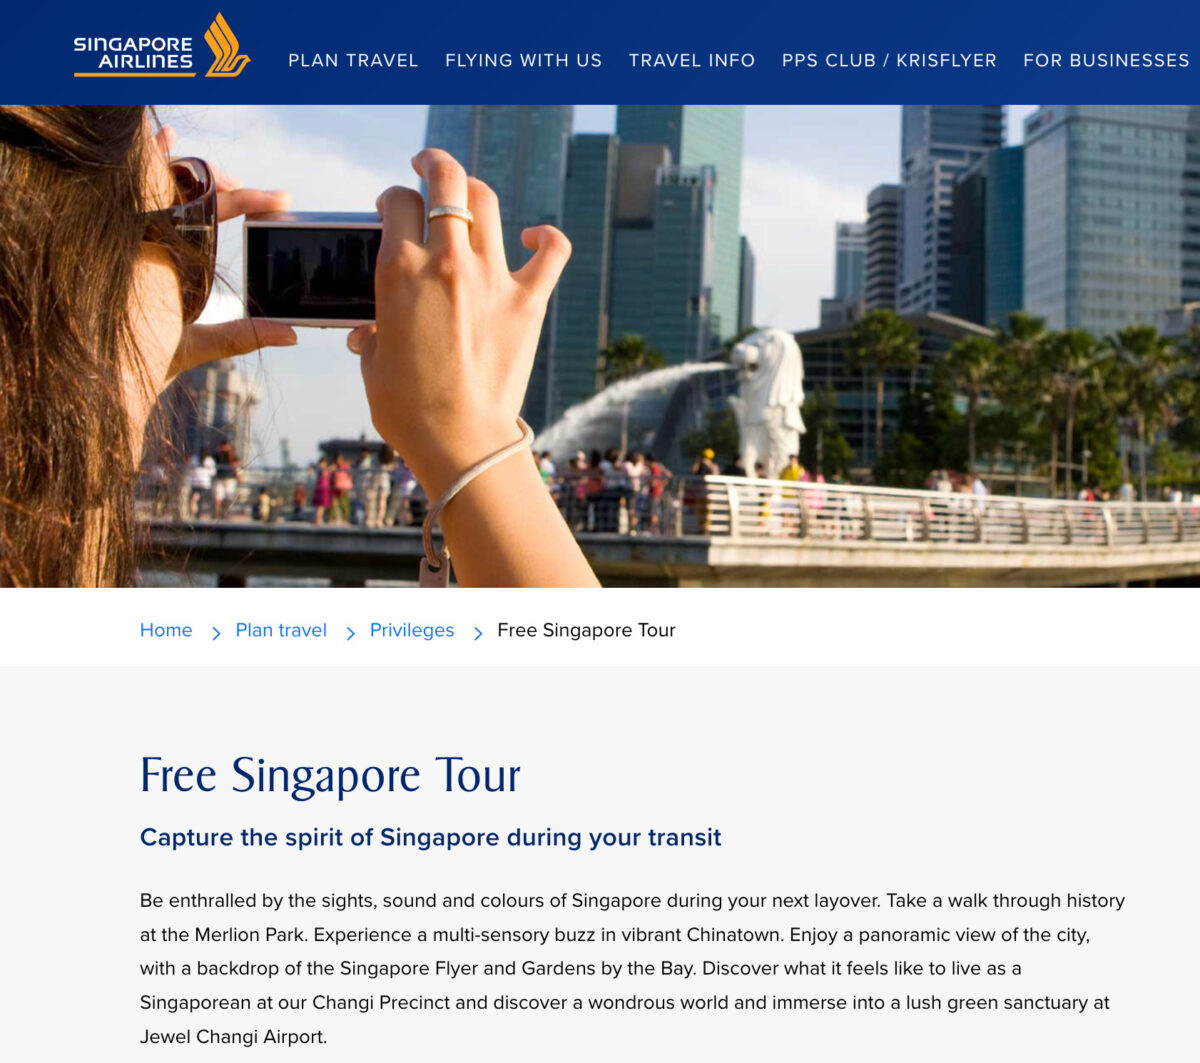 フリーシンガポールツアー申し込み方法を公開